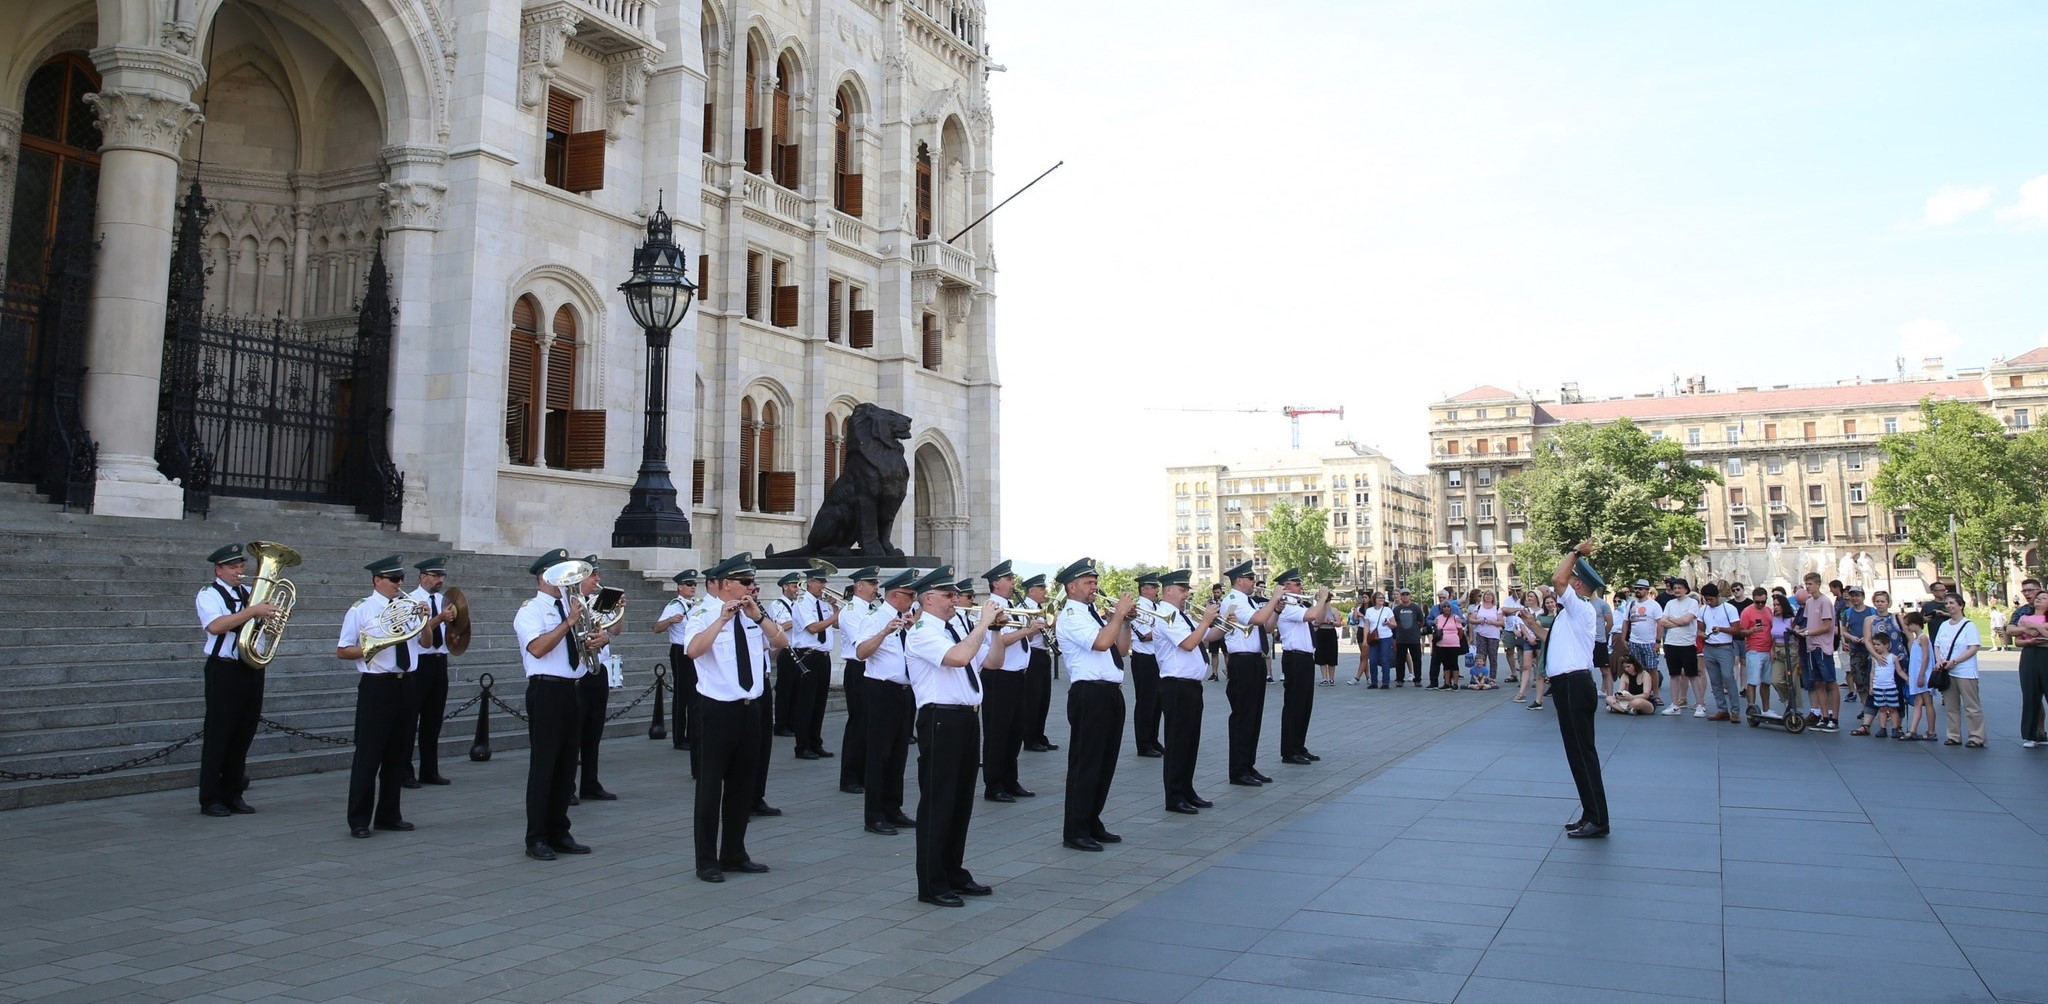 Ingyenes szabadtéri koncertek keltik életre a Kossuth teret idén nyáron